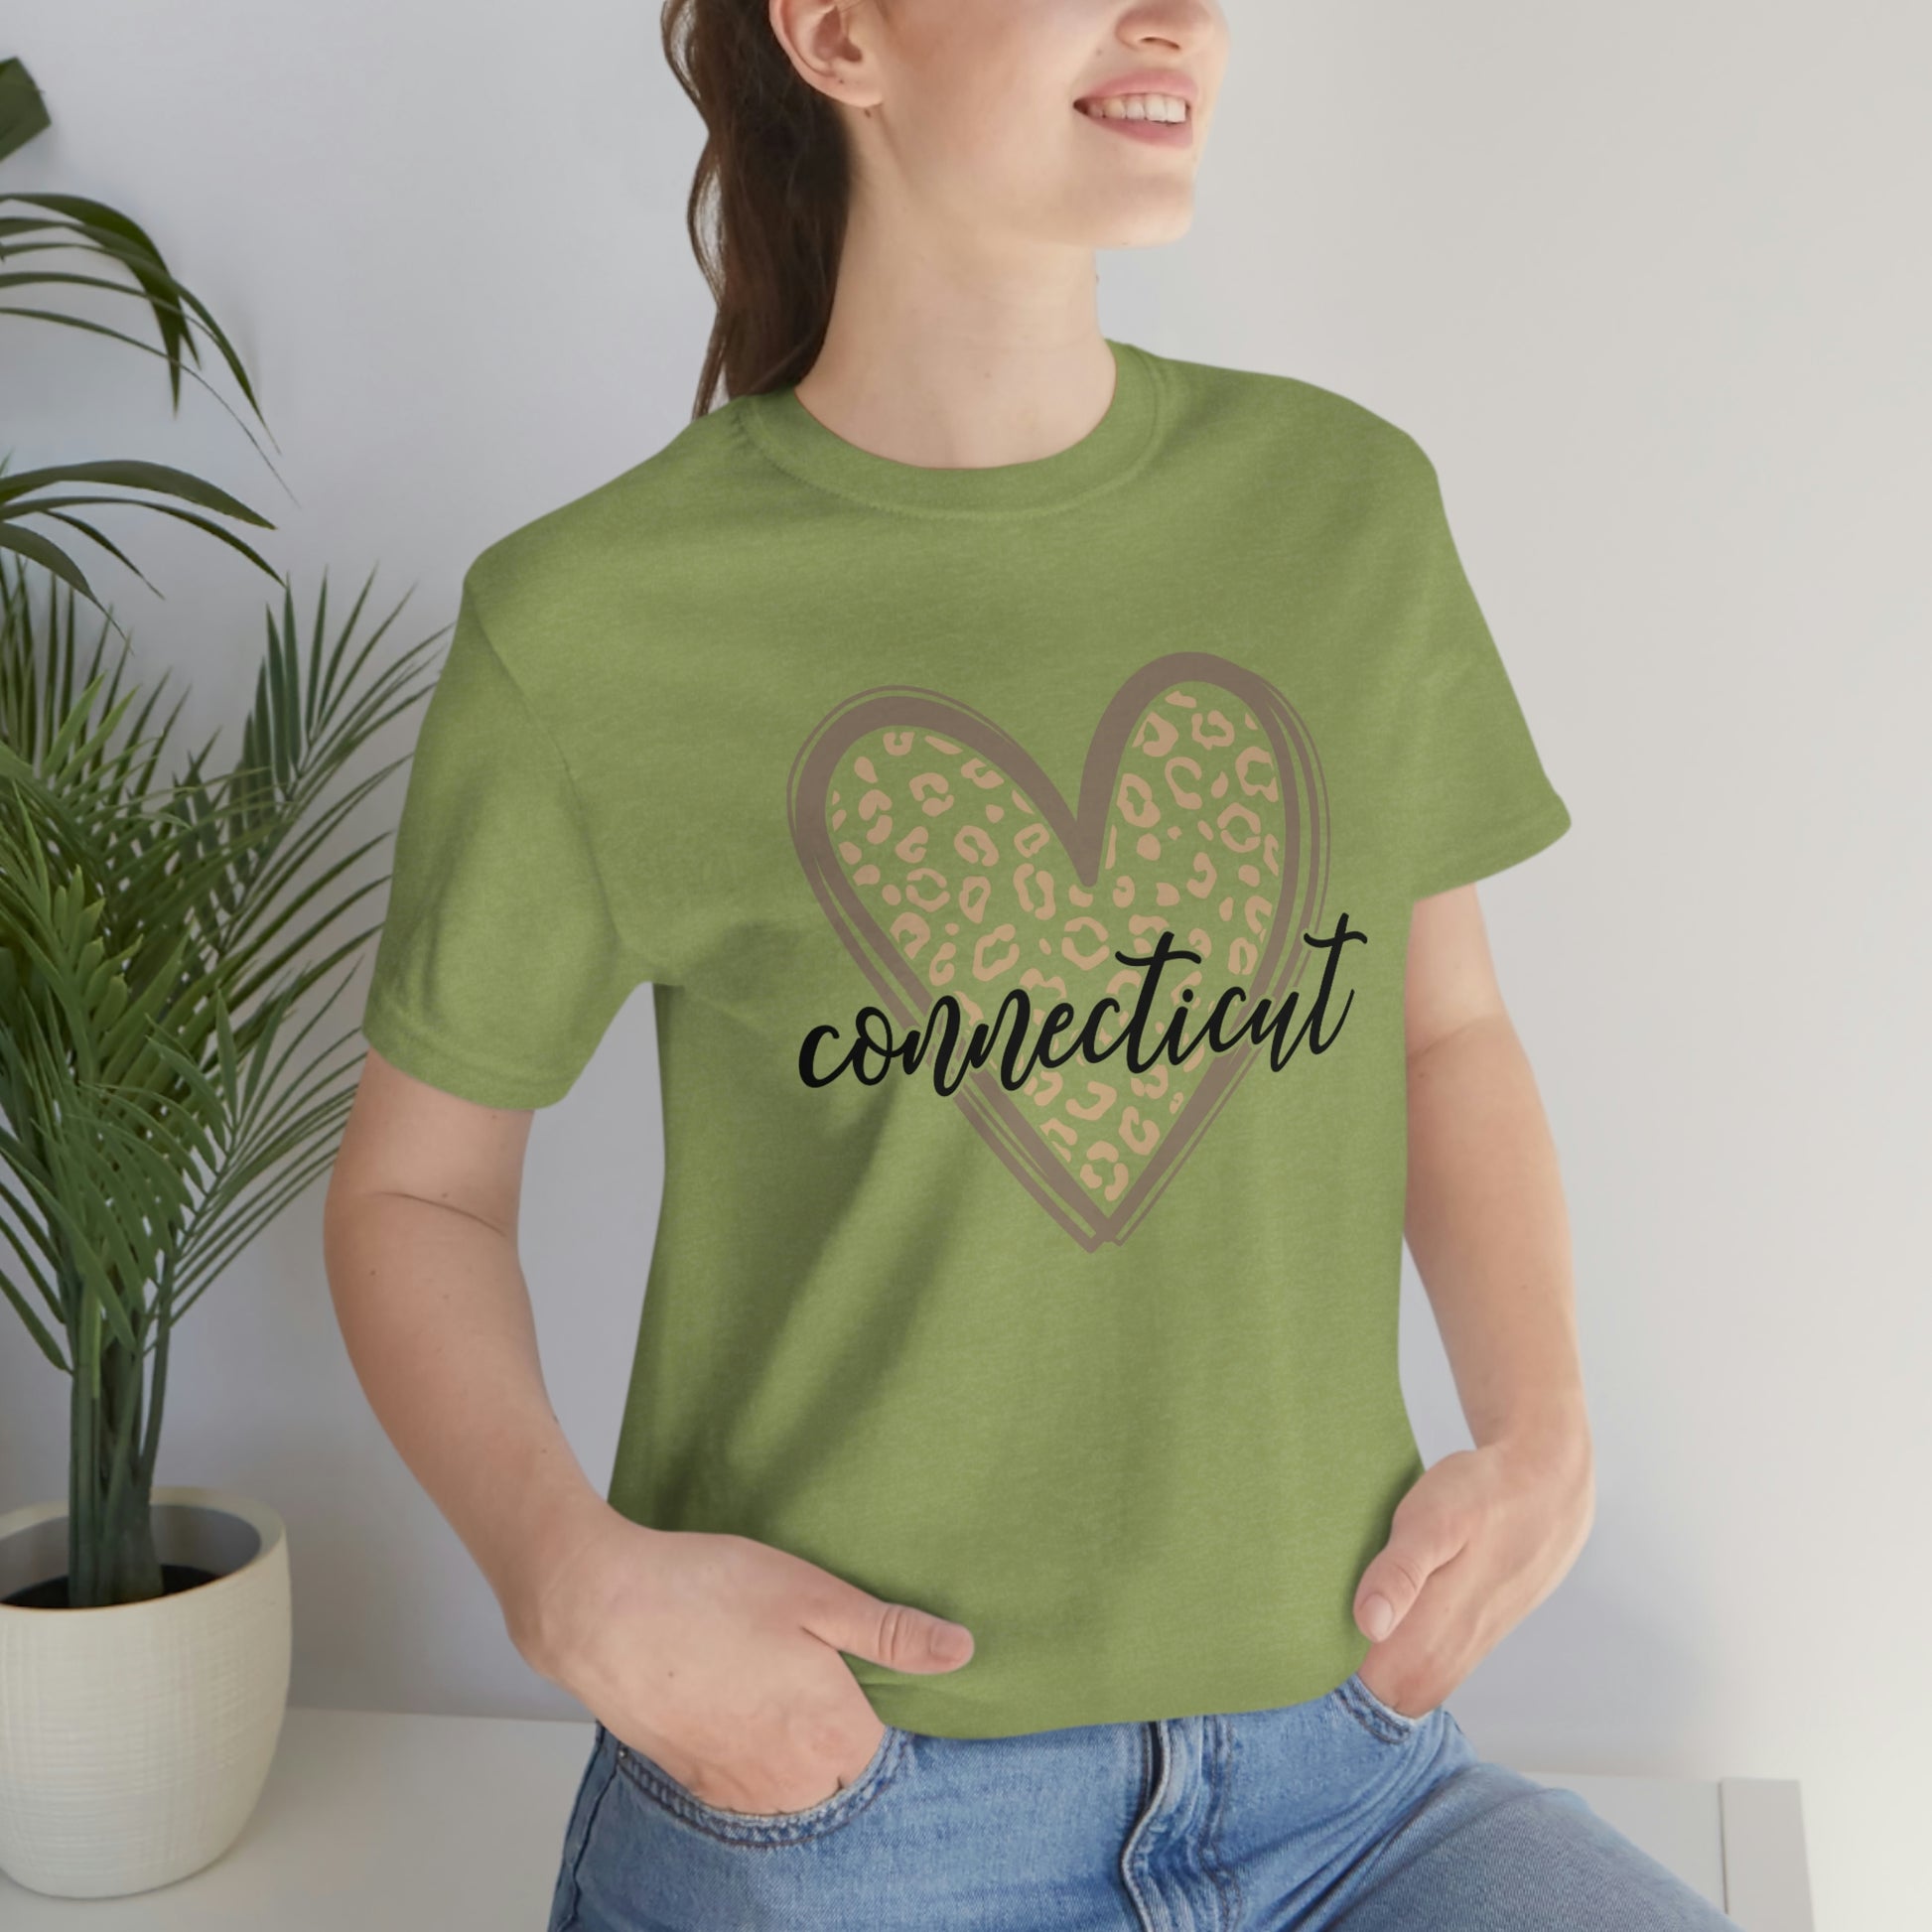 Connecticut Gold Leopard Print Heart Script Short Sleeve T-shirt